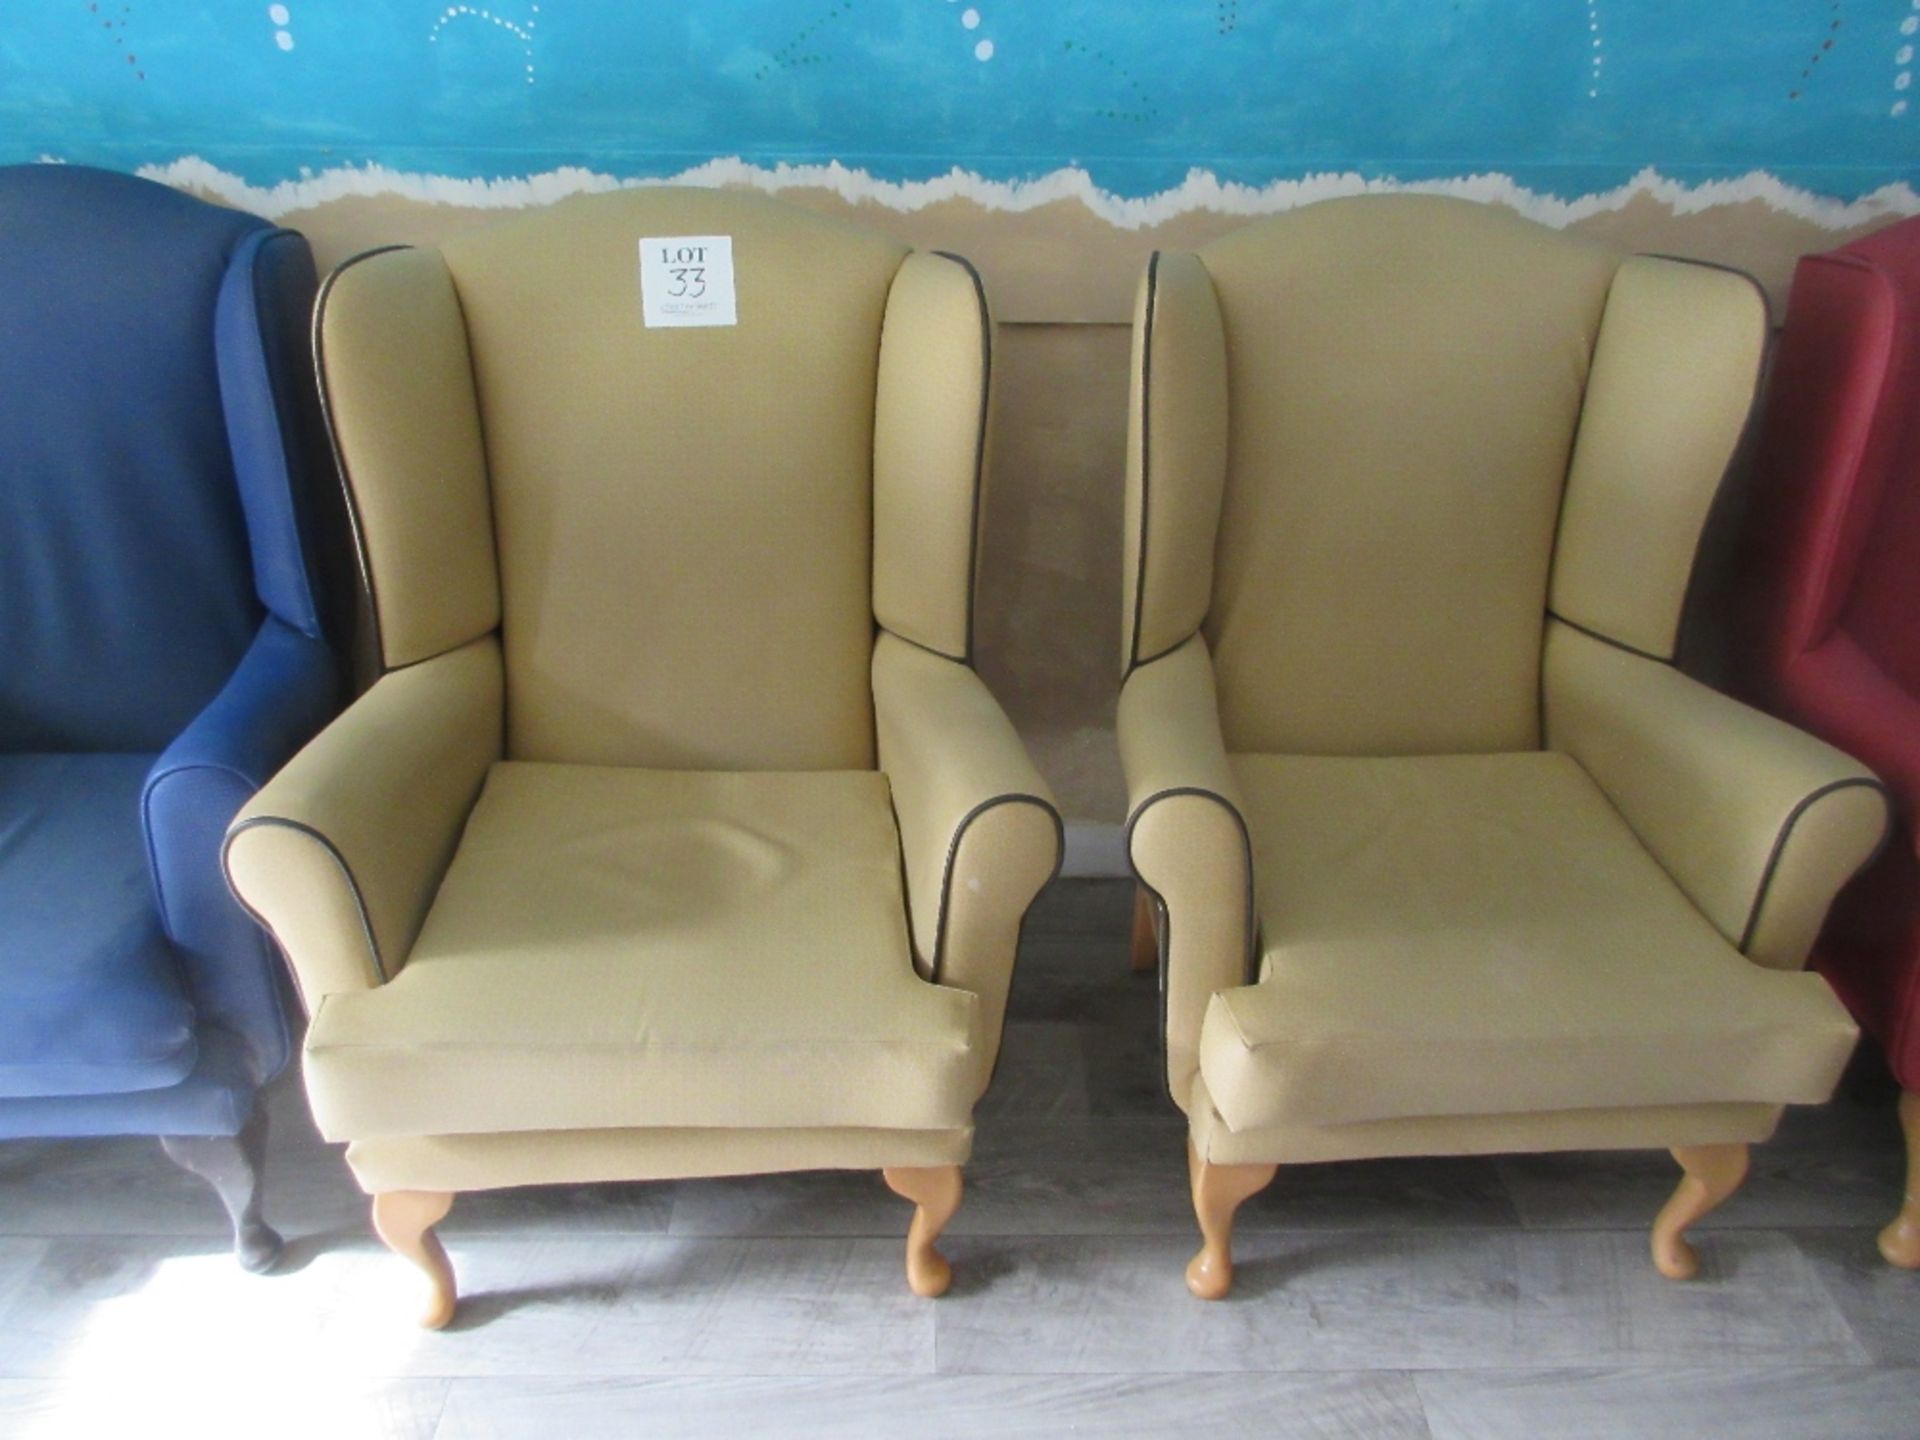 3 - Brown vinyl based armchairs